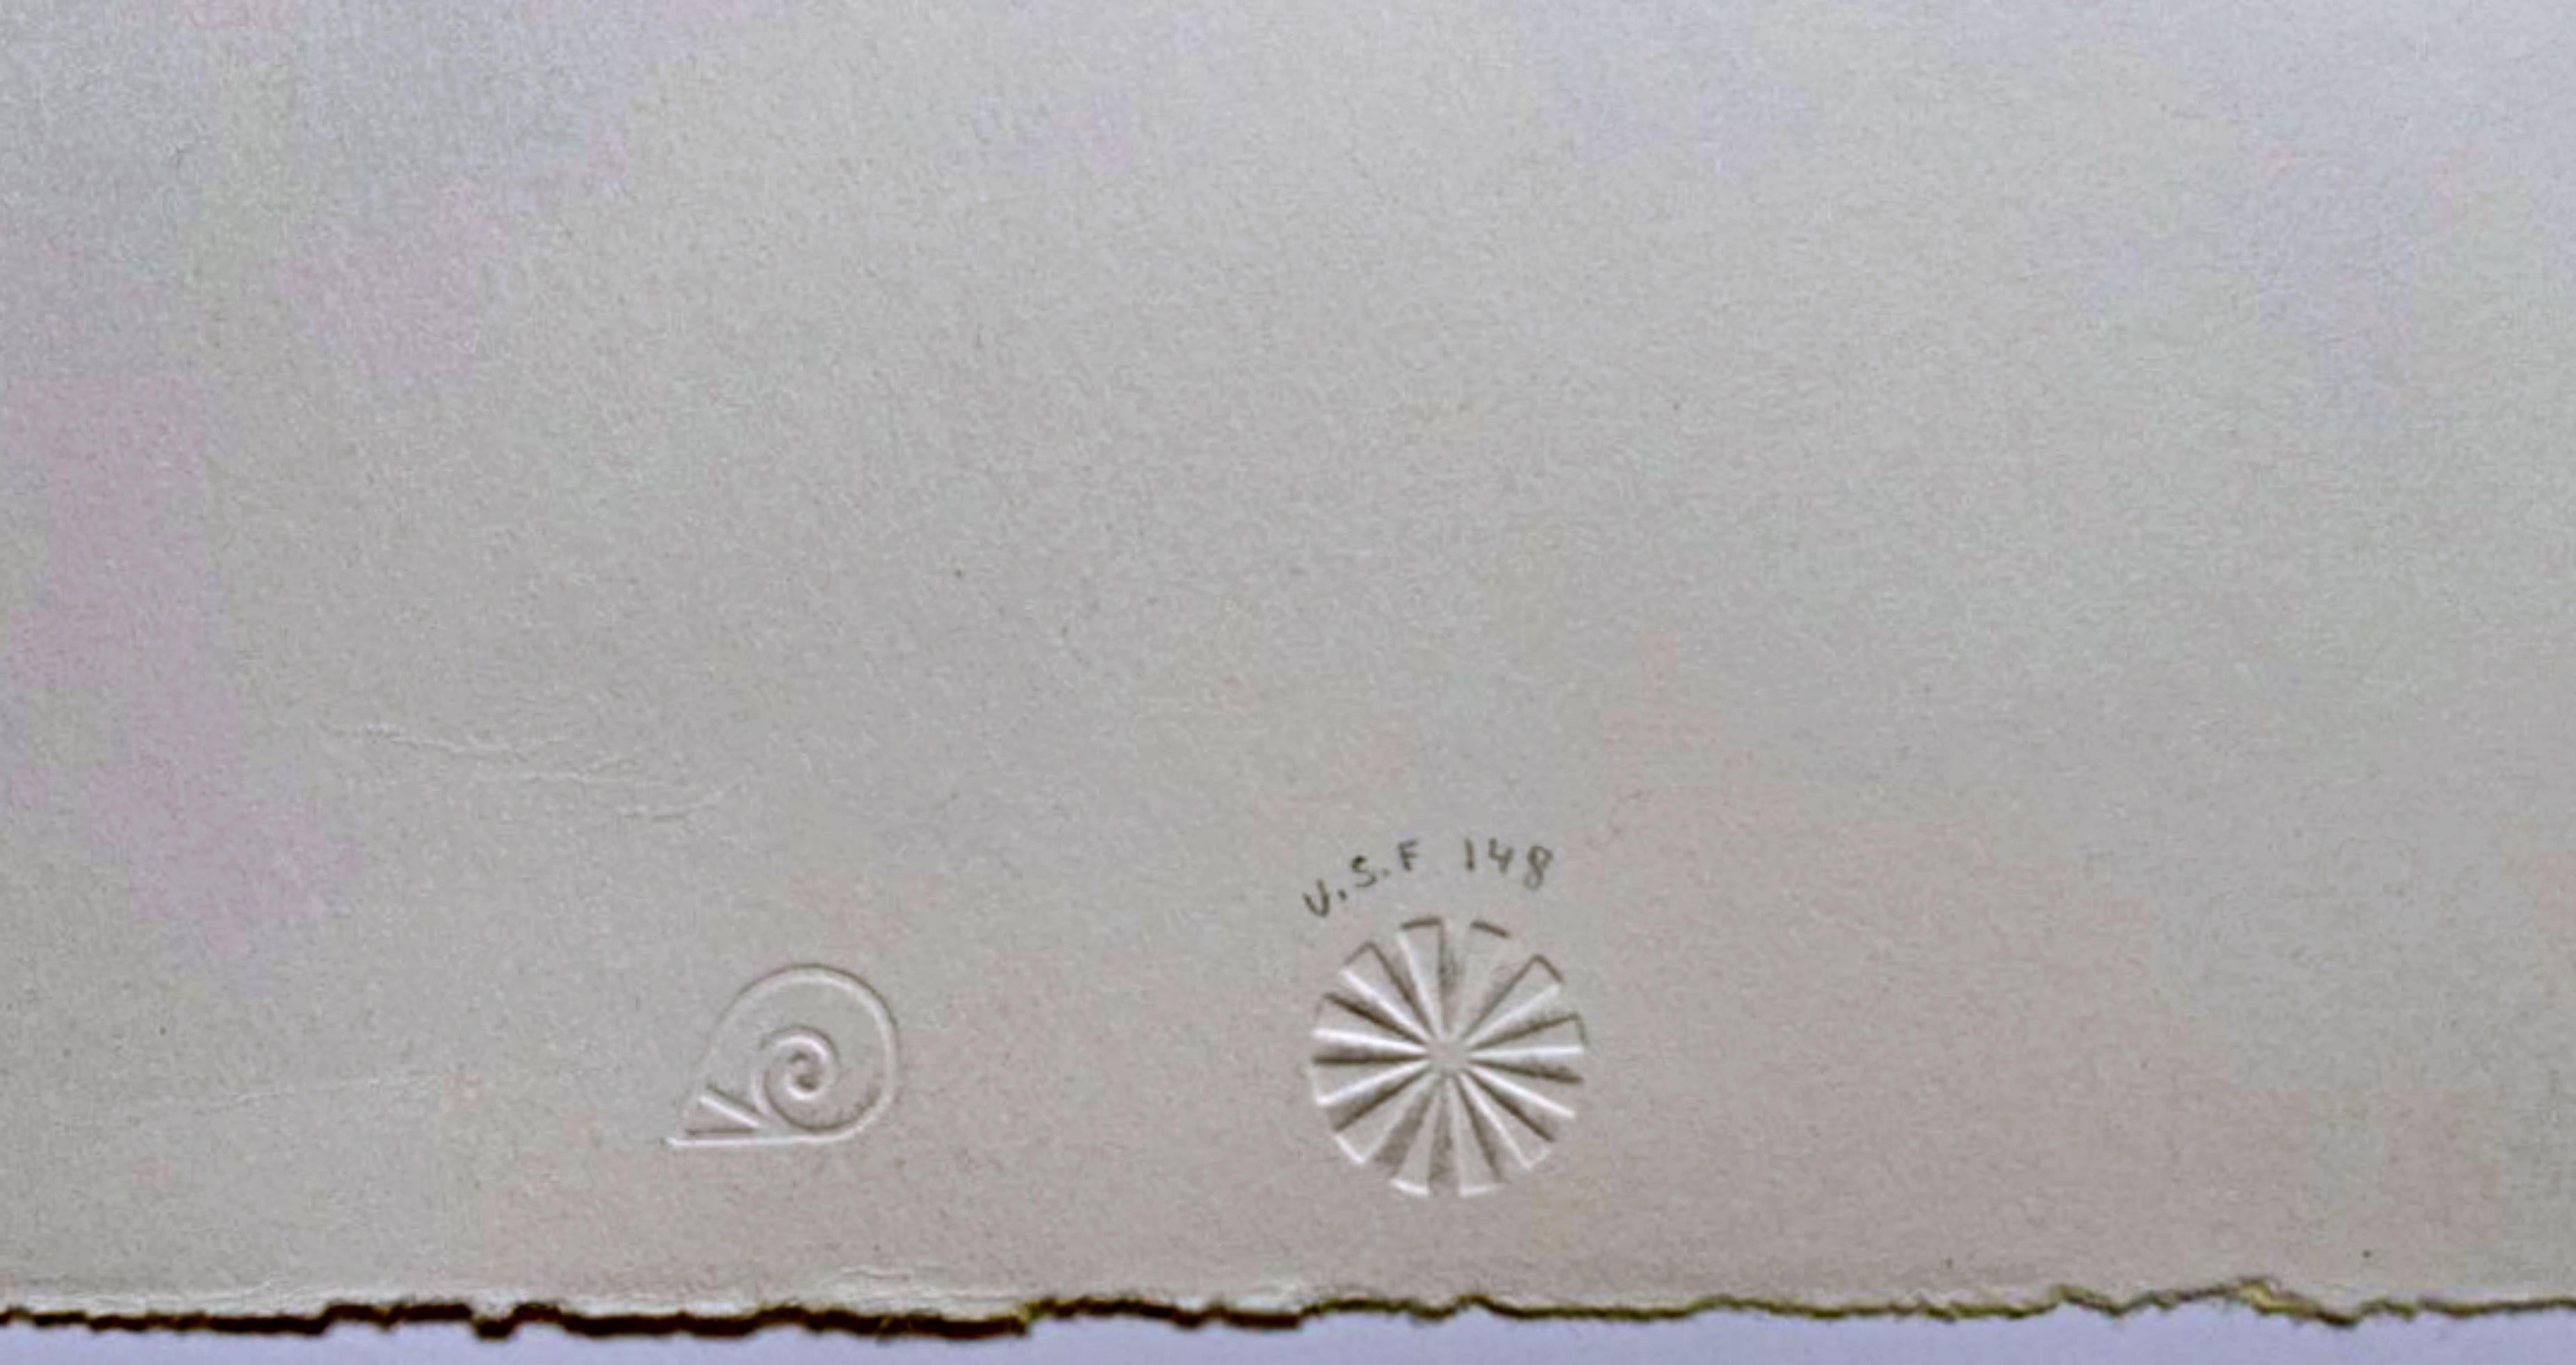 James Rosenquist
Galerie d'Art, provenant de la succession de Nina Castelli et de la Collection d'Ileana Sonnabend (Glenn, 41), 1971
Lithographie couleur sur papier Rives BFK
30 × 22 1/2 pouces
Edition 10/30
Signé au crayon, numéroté 10/30 et daté